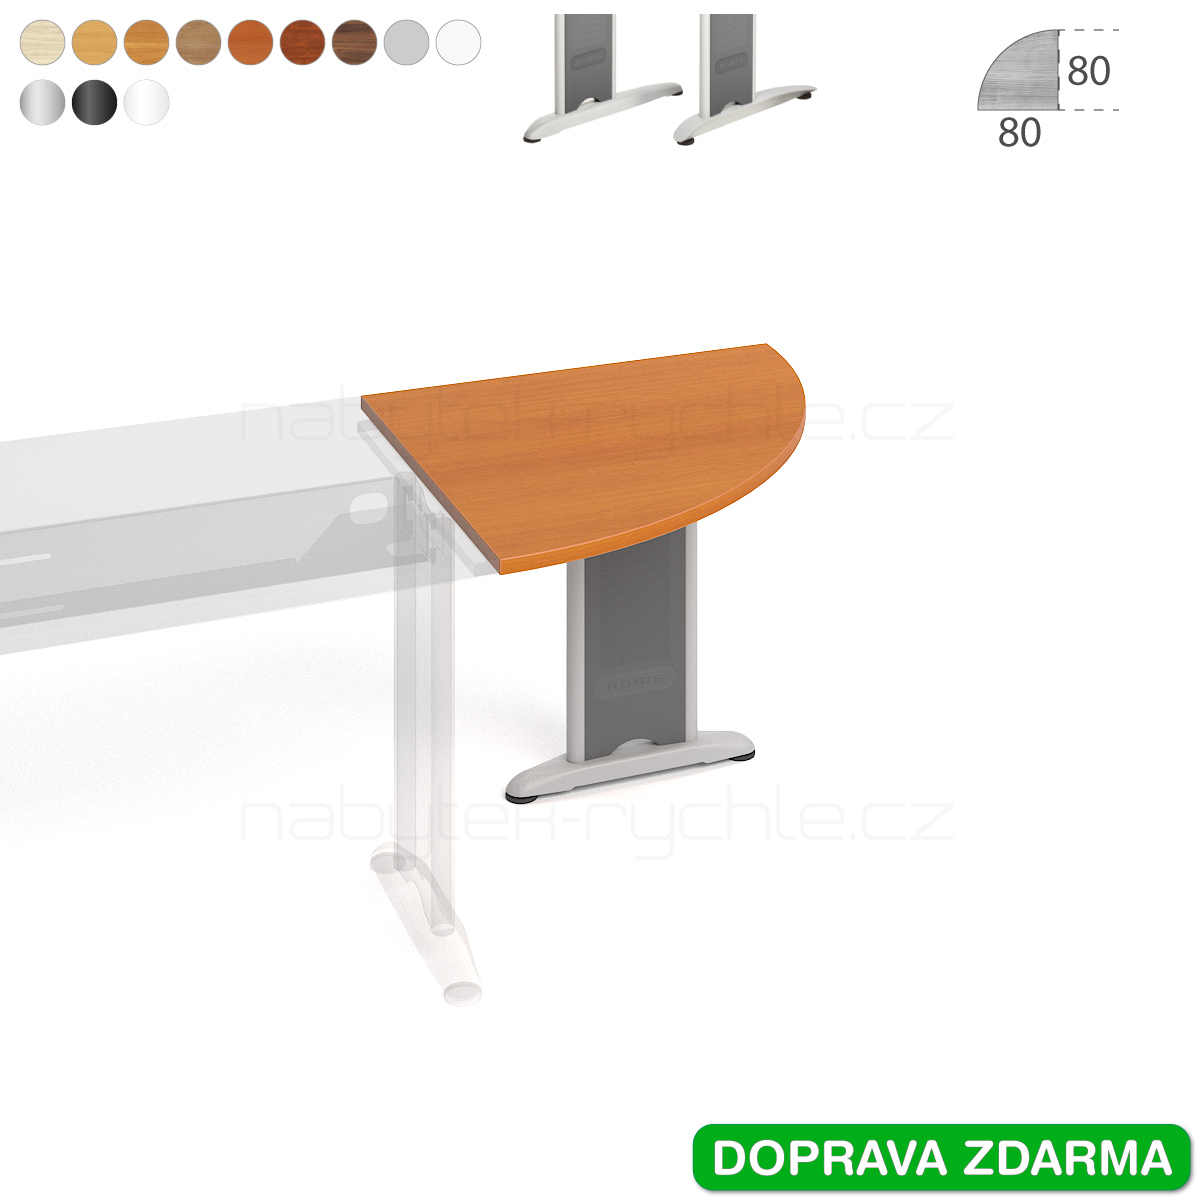 FP 901 L Hobis Flex - Stůl přídavný 80 x 80 (90°)